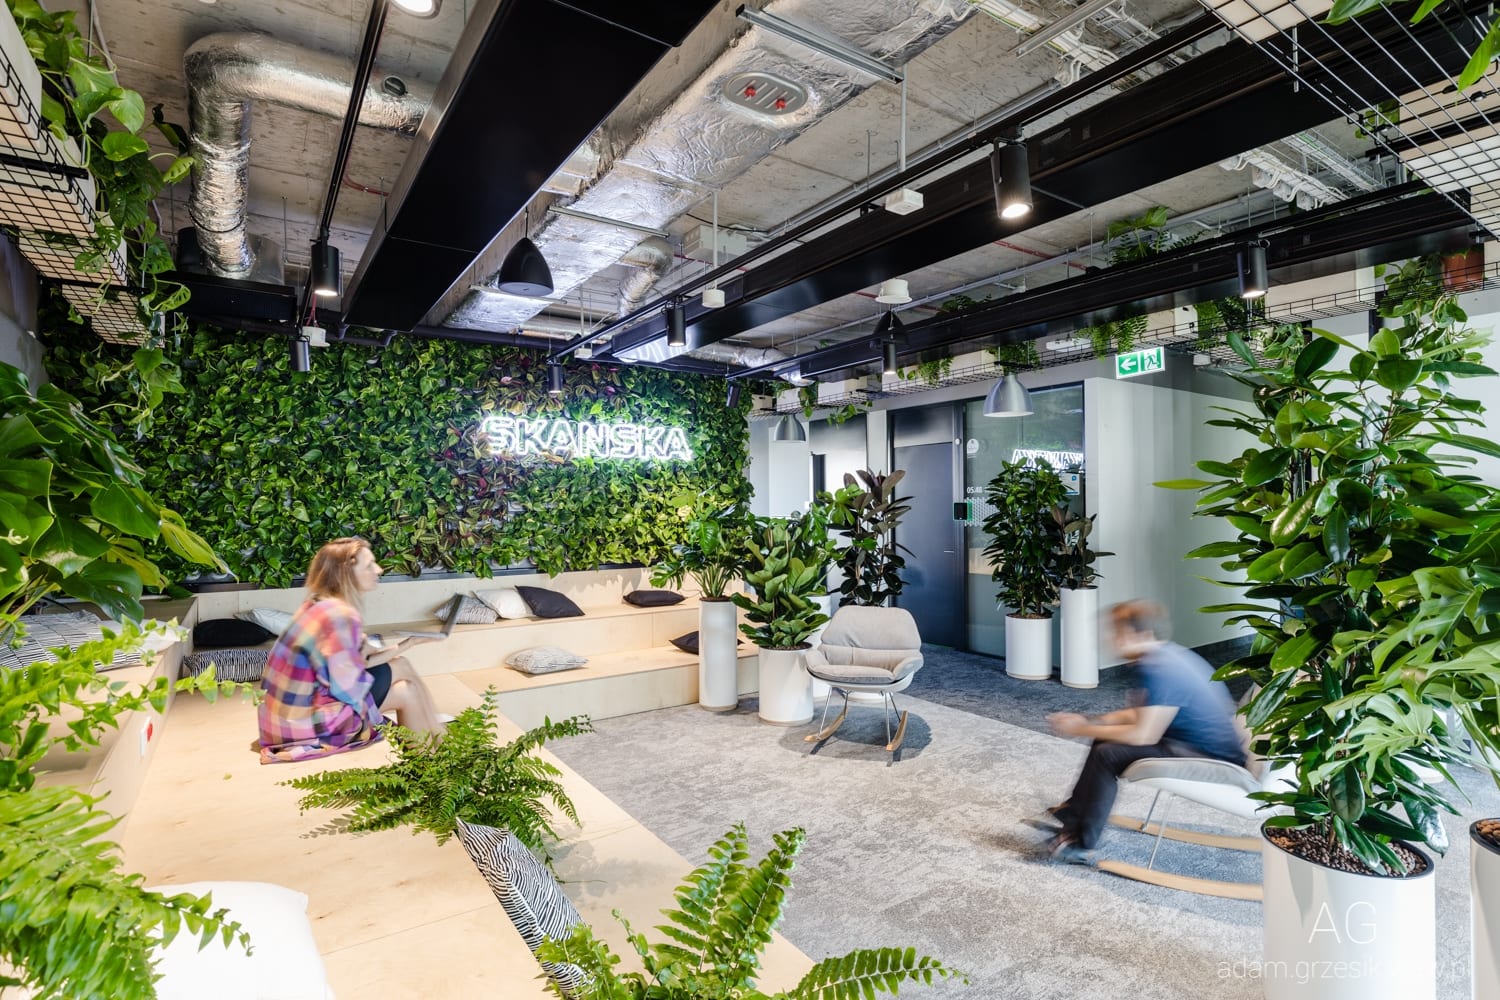 Skanska's new Warsaw HQ features a jungle of plants